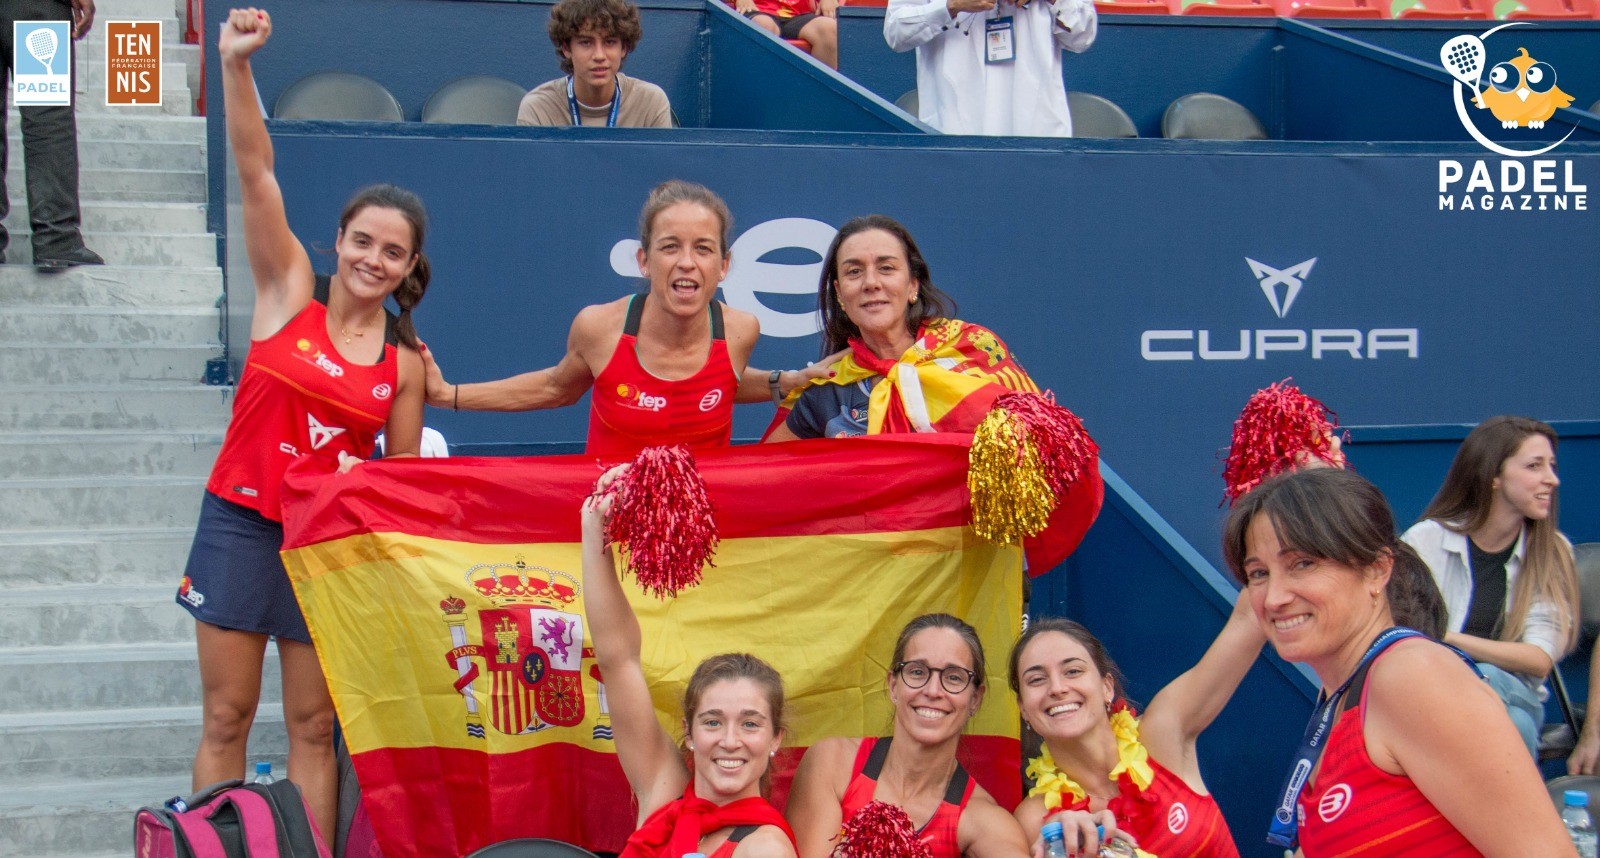 Le padel “Menjar” el tennis a Espanya